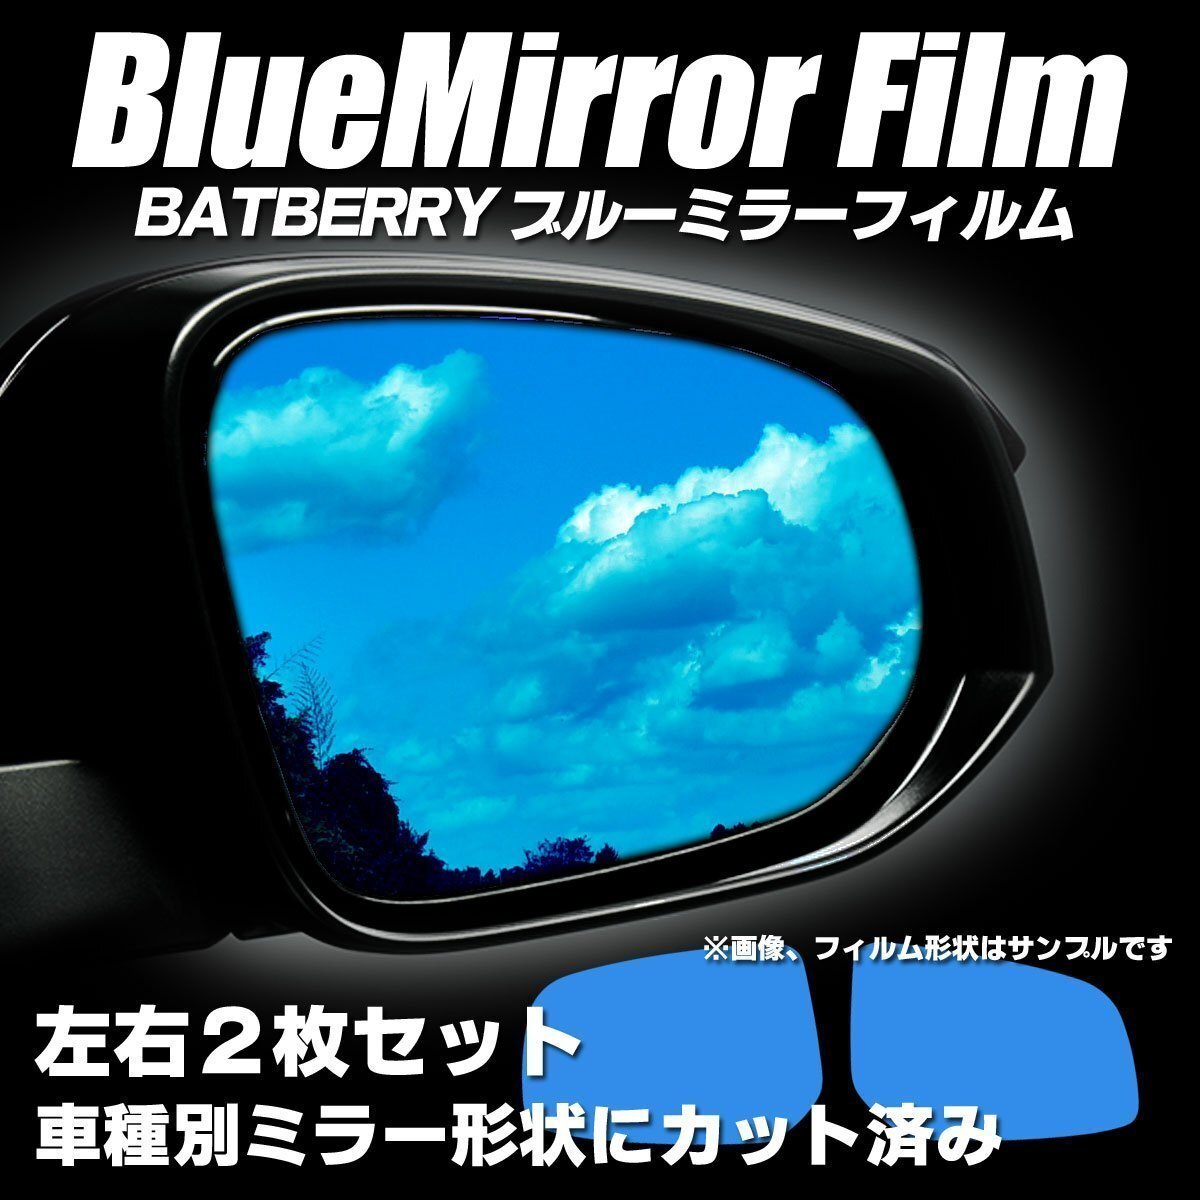 BATBERRY голубой зеркальная пленка Mitsubishi ek спорт H82W более поздний вариант левый и правый в комплекте эпоха Heisei 22 год 8 месяц ~ эпоха Heisei 25 год 6 месяц до. марка машины соответствует 